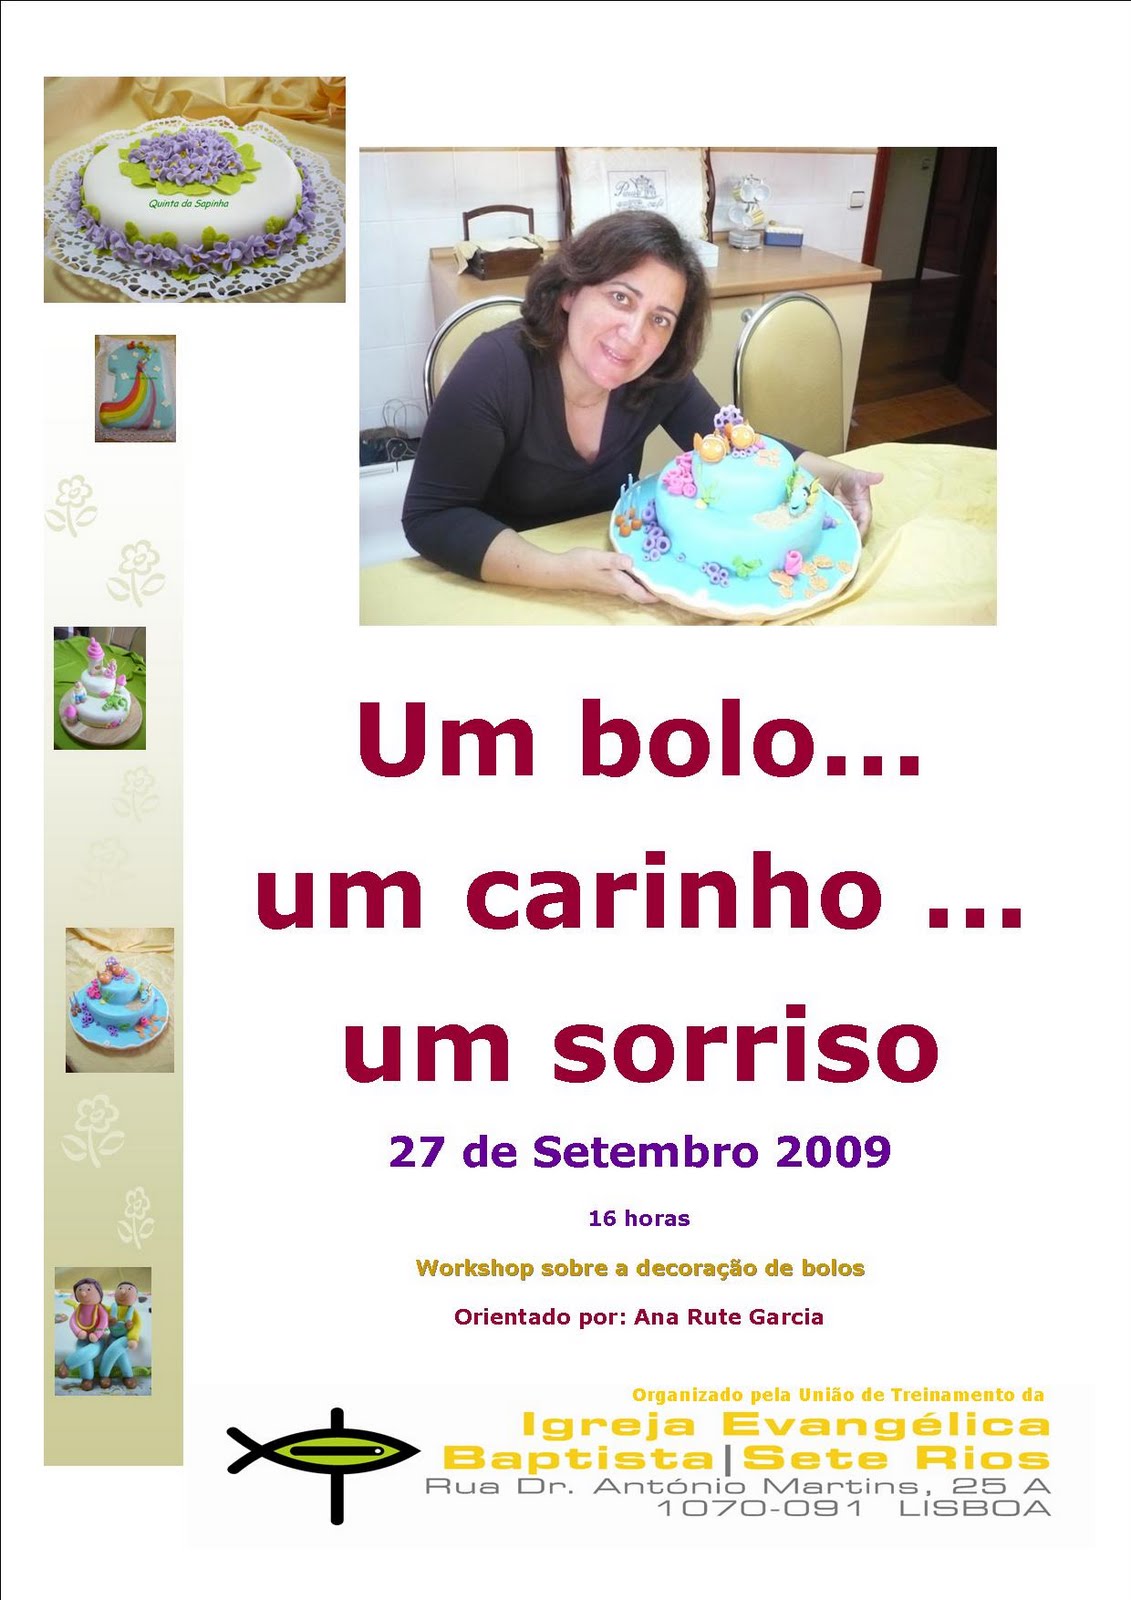 [2009_09_27_workshop+decoração+de+bolos.jpg]